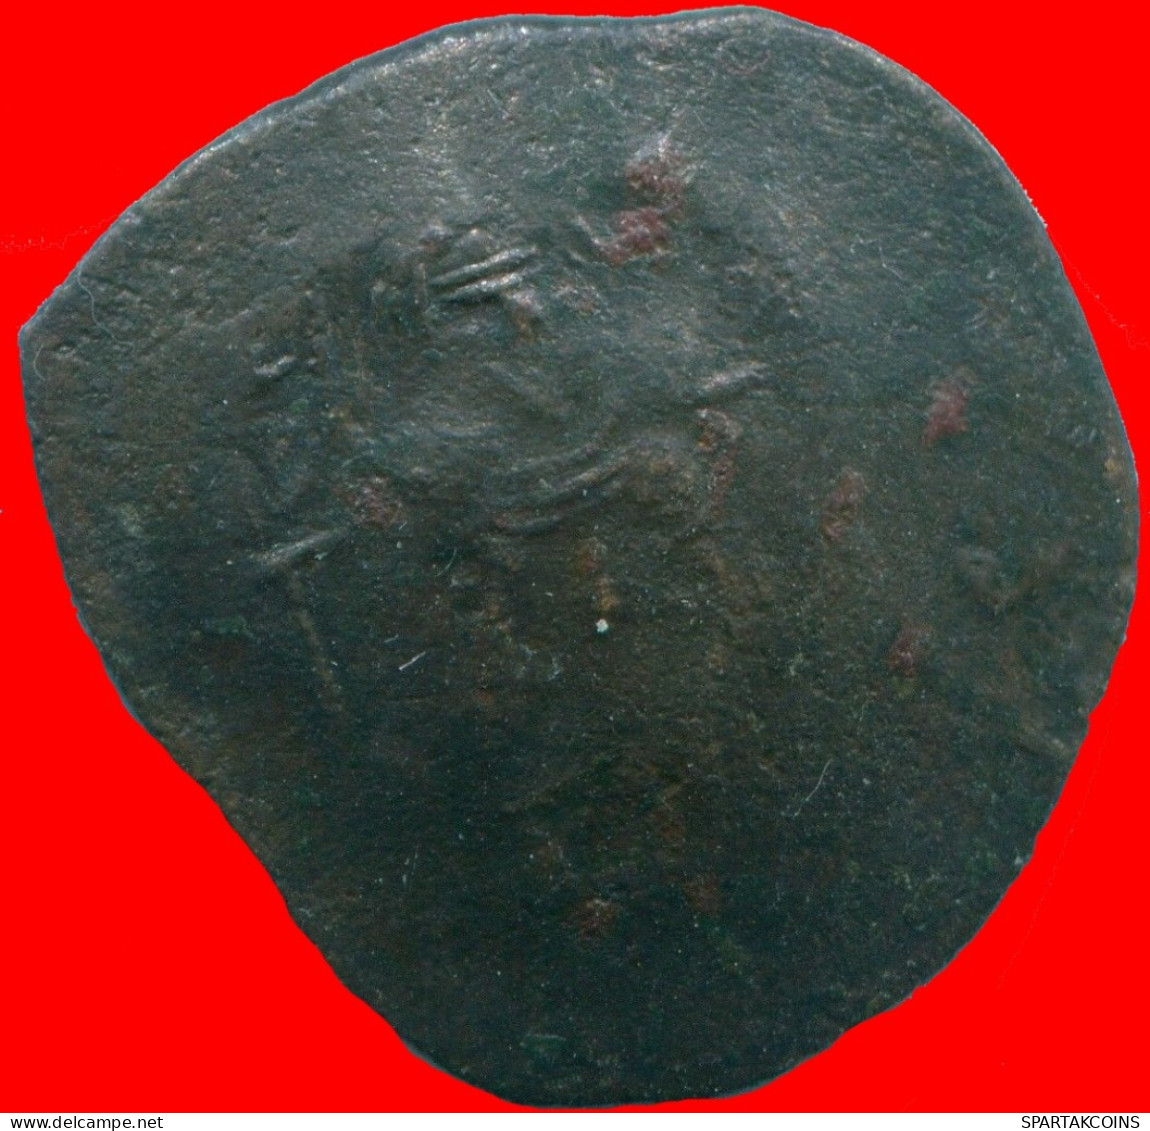 Ancient BYZANTINE EMPIRE ASPRON TRACHY Coin 3.31g/23.47mm #ANC13493.13.U.A - Byzantinische Münzen